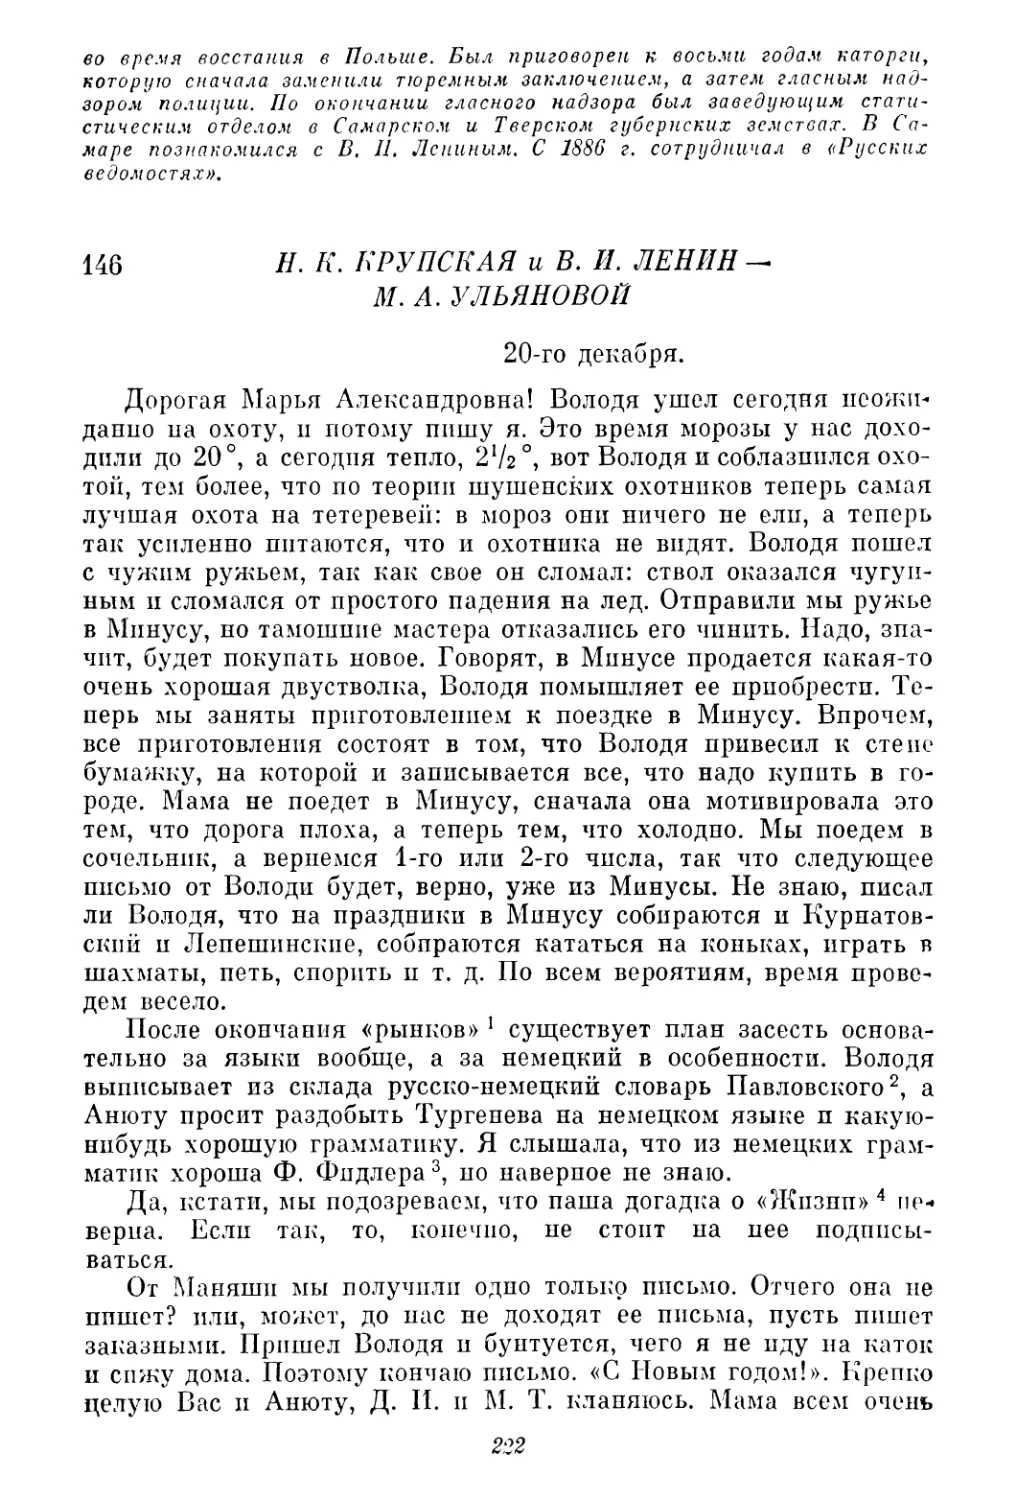 146. Н. К. Крупская и В. И. Ленин — М. А. Ульяновой. 20 декабря